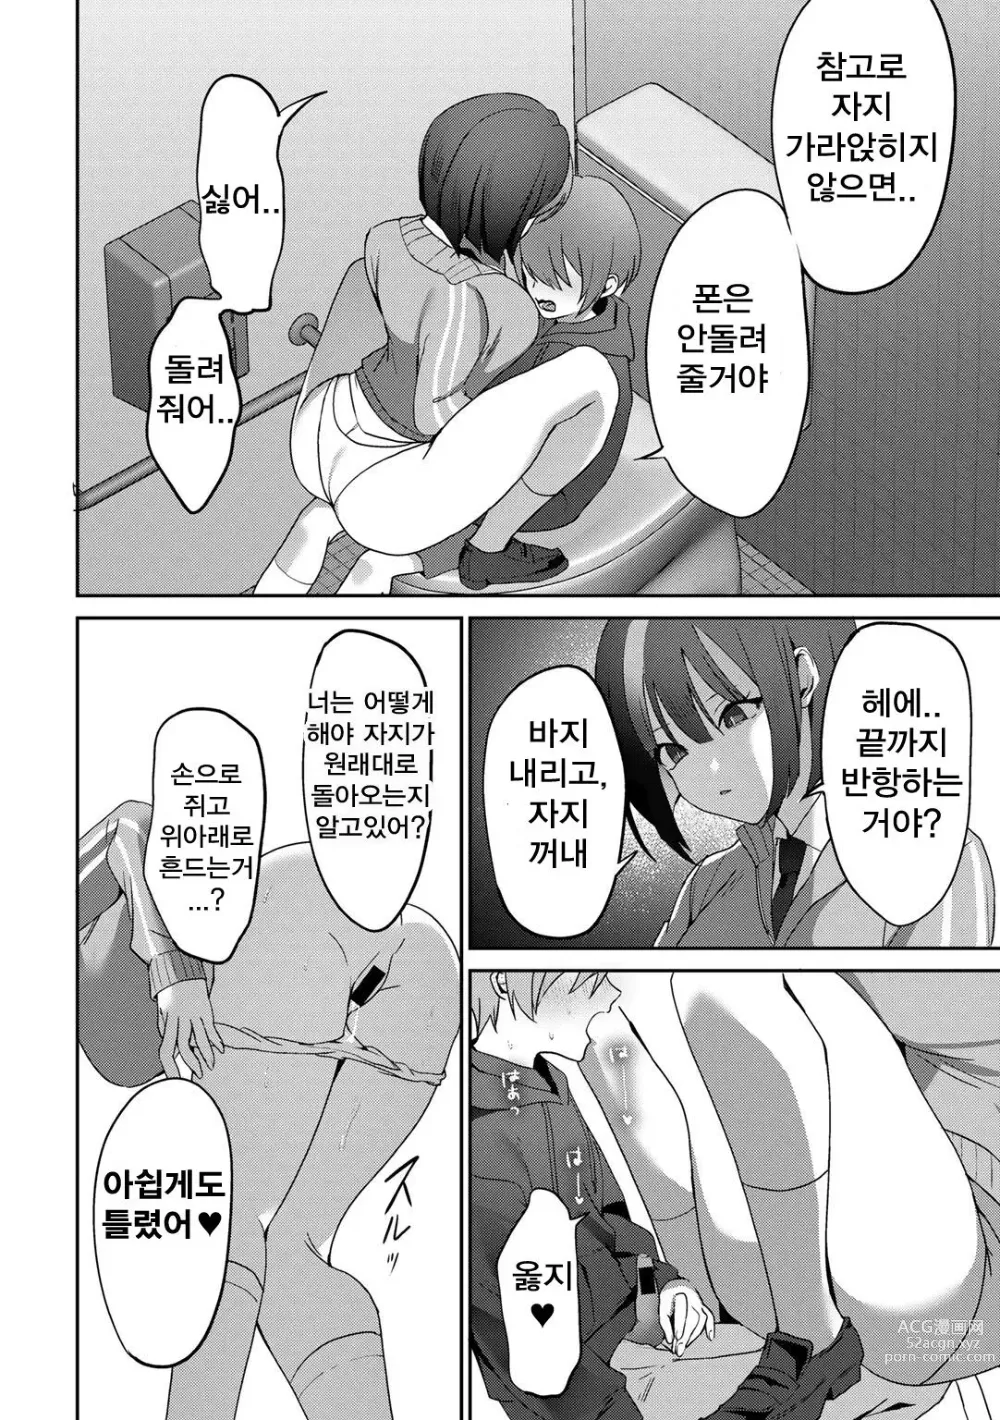 Page 18 of manga Gomennasai ga Kikoenai